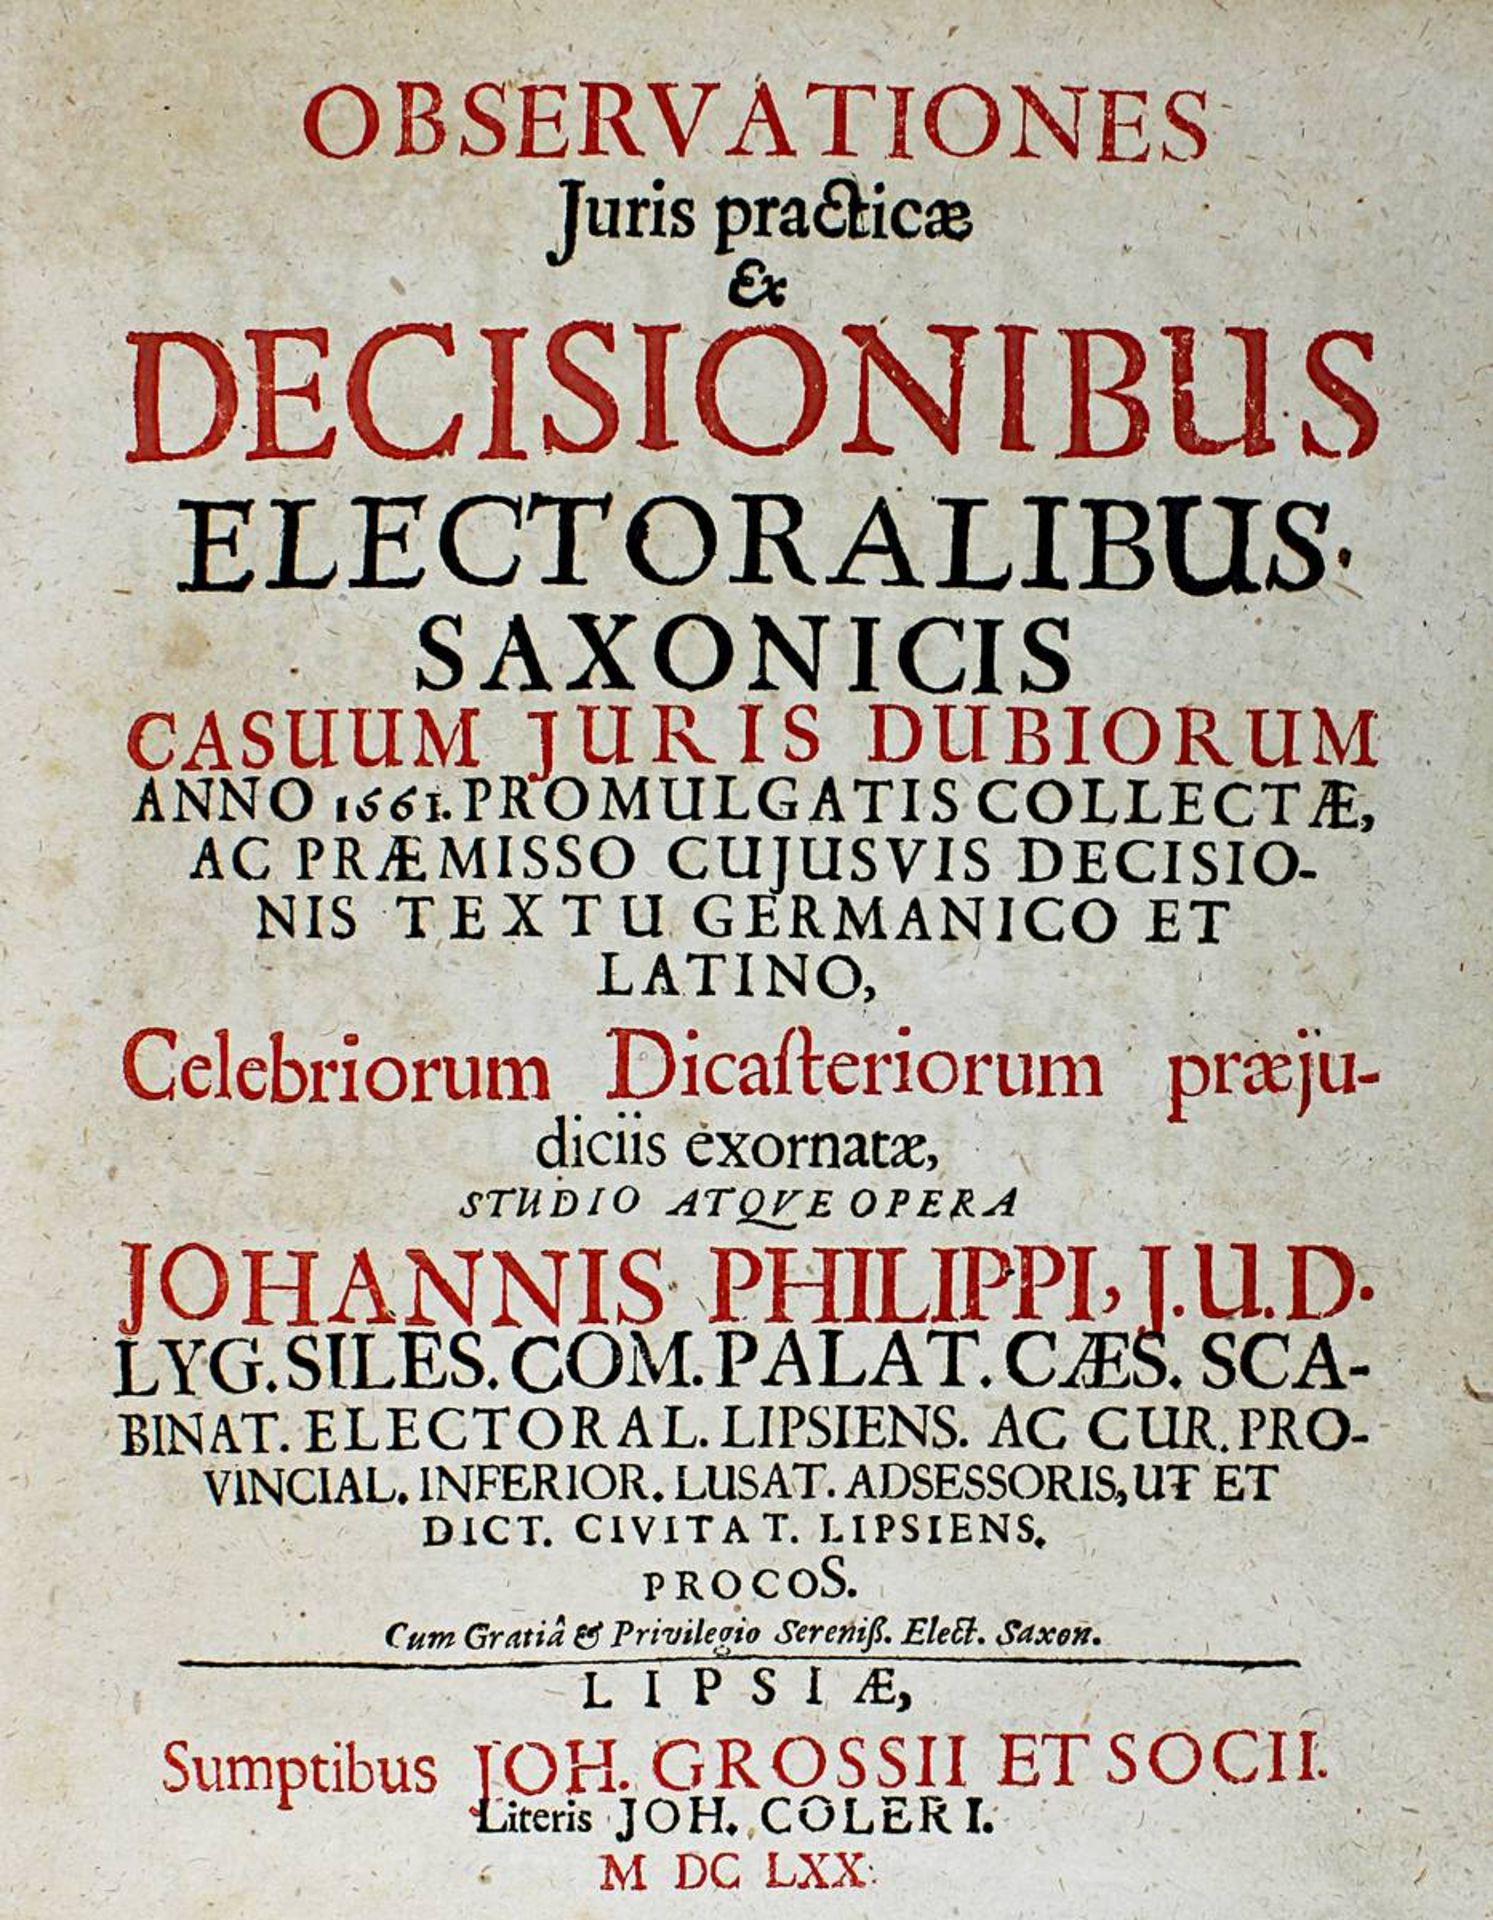 Philipp, Johannes, "Observationes Juris practicae ex Decisionibus electoralibus saxonicis casuum